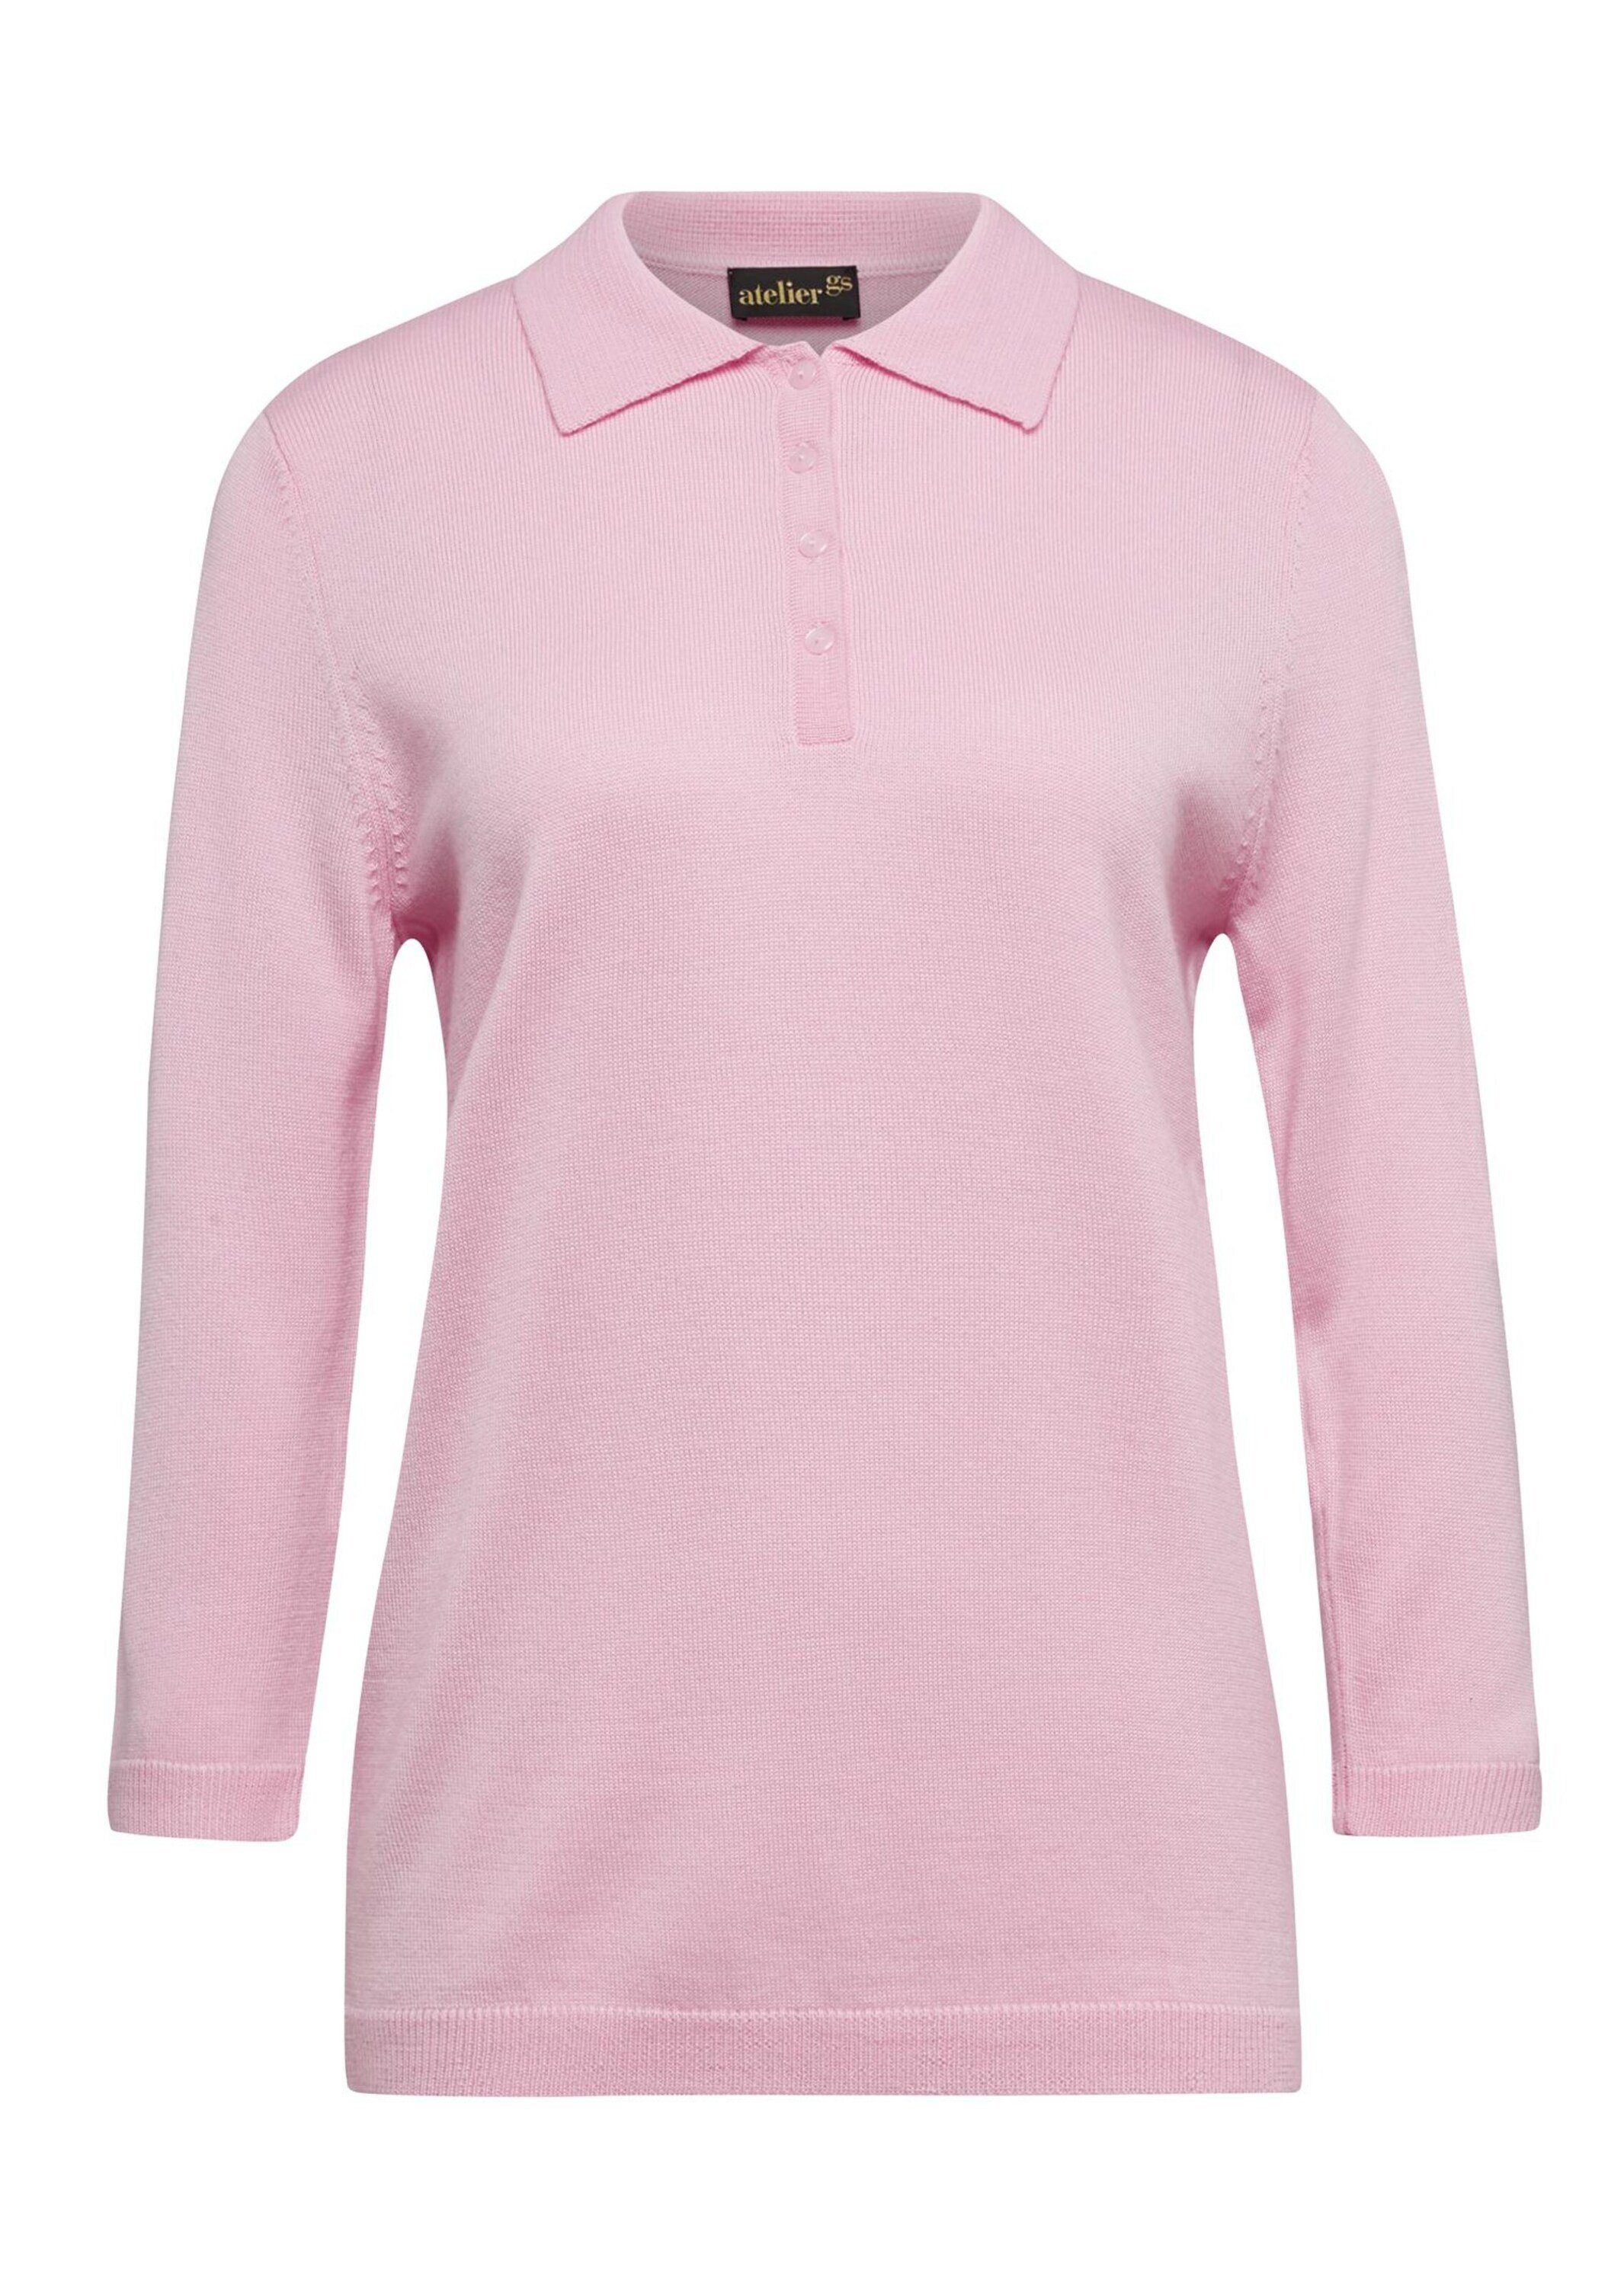 GOLDNER Pullover in Qualität hochwertiger rosa Strickpullover